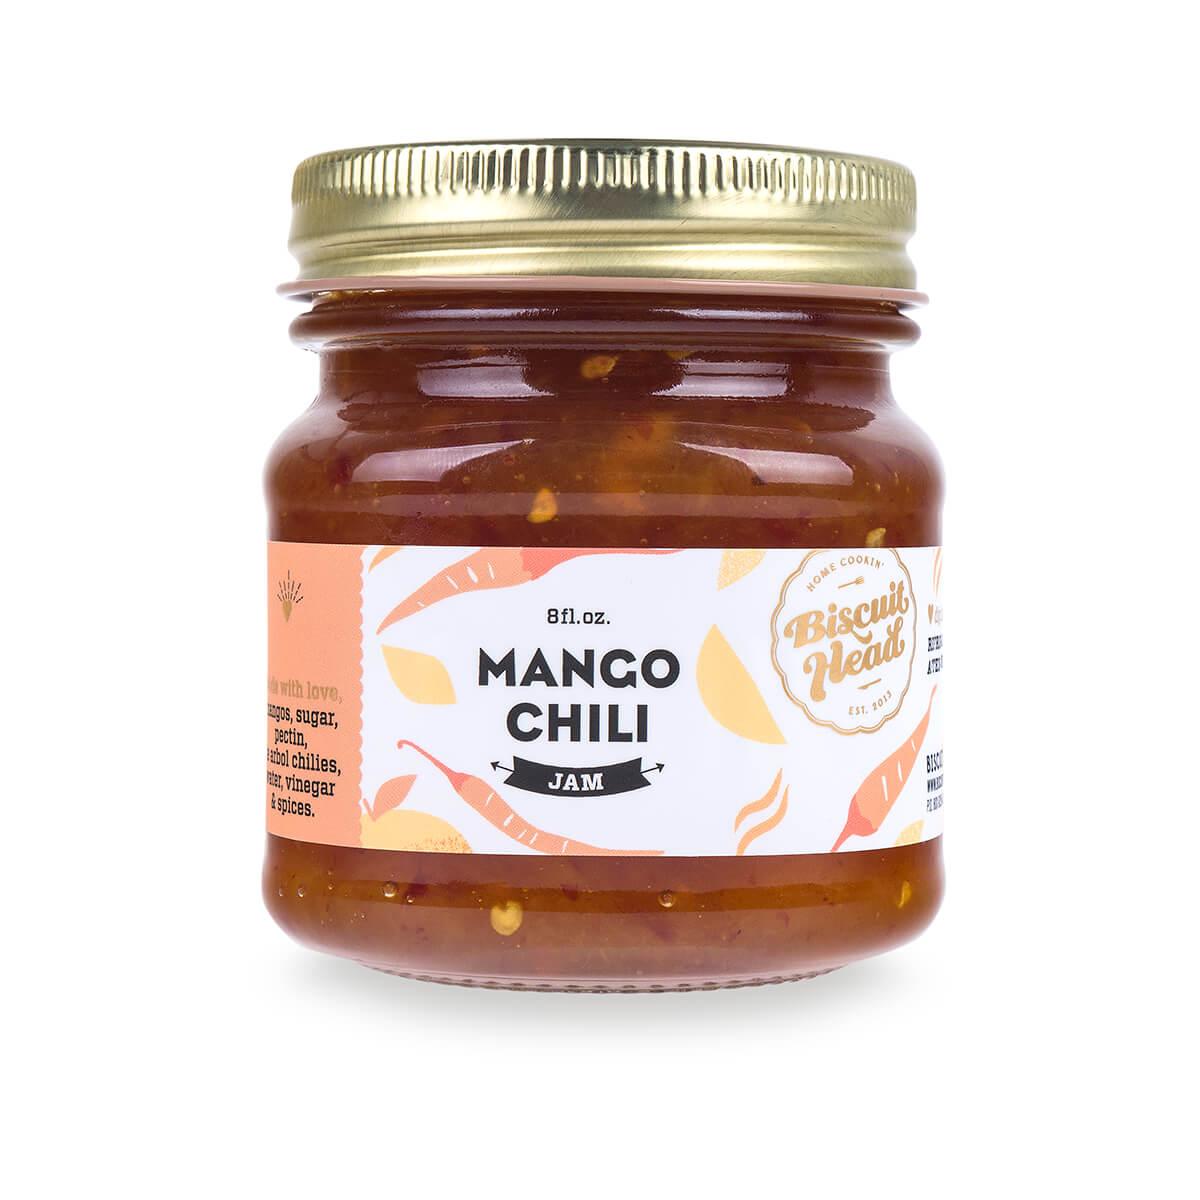  Mango Chili Jam